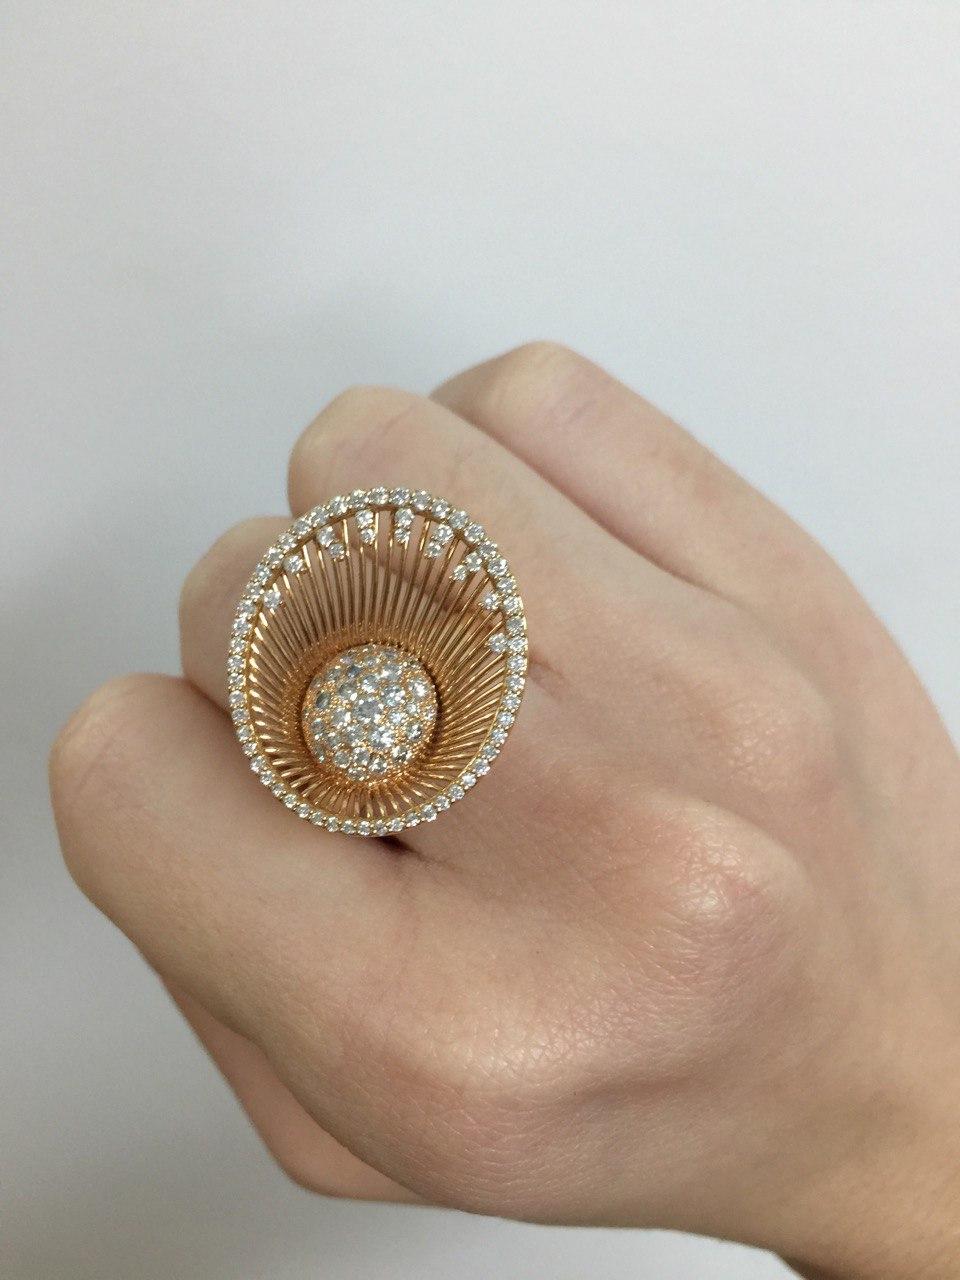 Ellipse white diamonds halo fashion contemporary design ring In New Condition For Sale In Valenza, IT